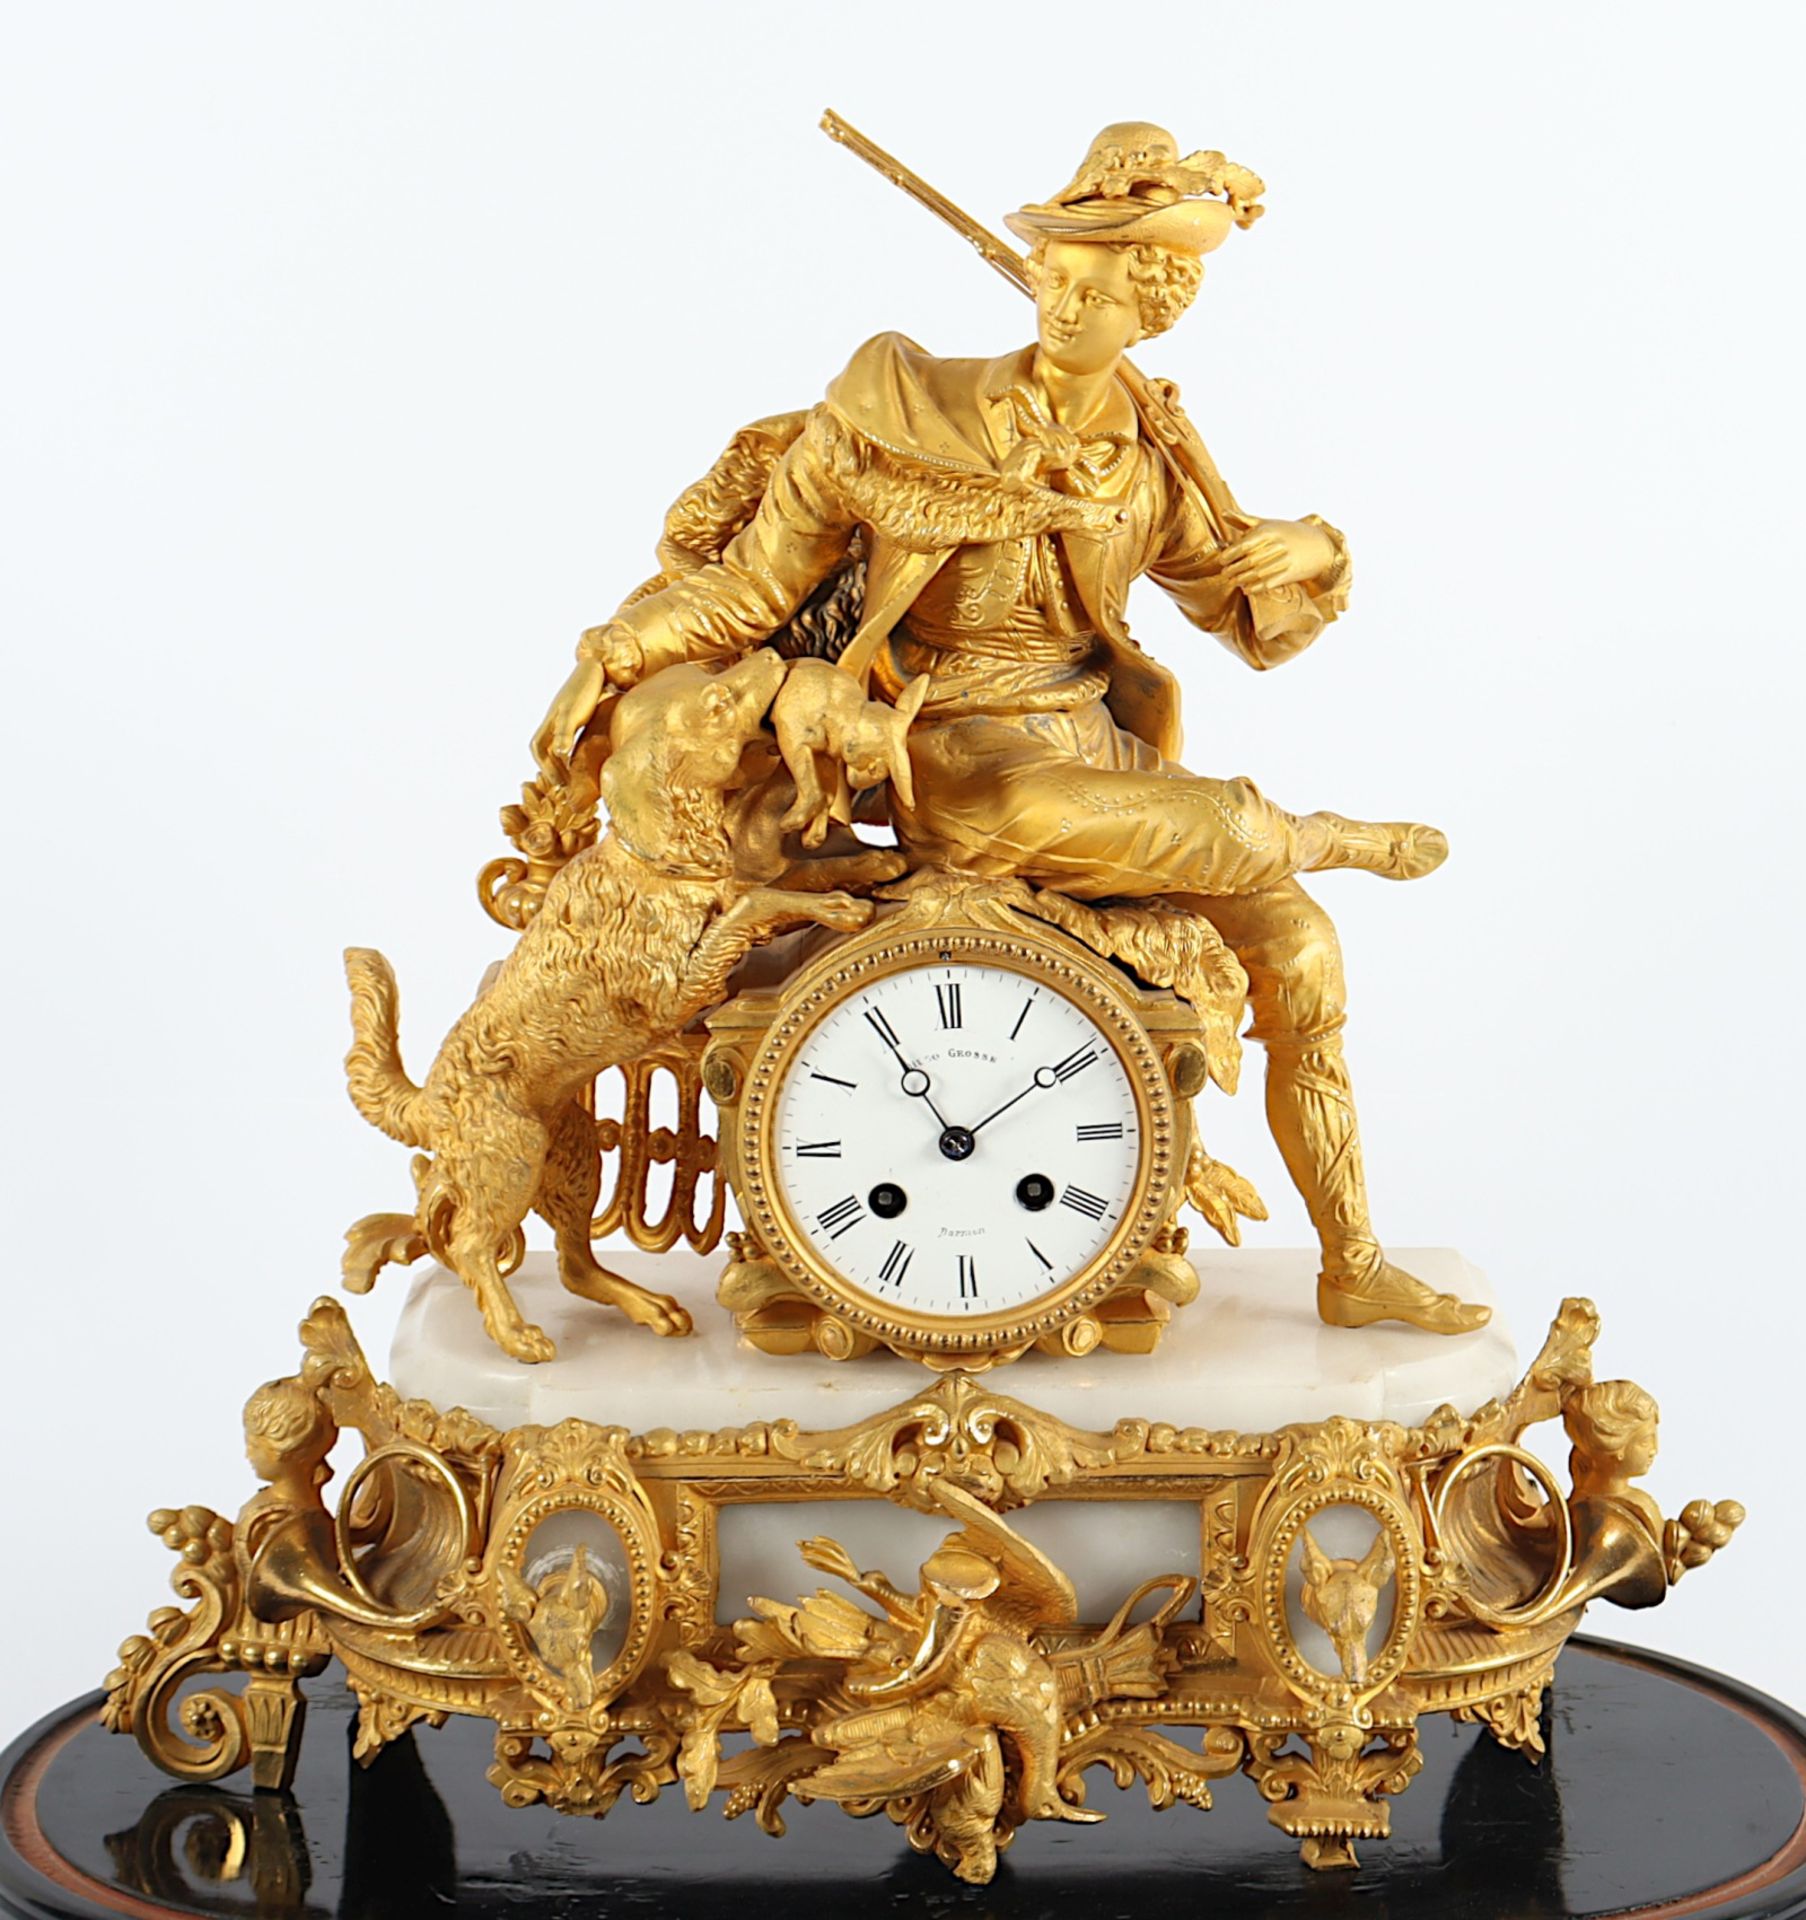 GROSSE FIGURENPENDULE "JÄGER", Alabaster und vergoldete Régule, besch., Werk mit Schlag auf Glocke, - Image 2 of 6